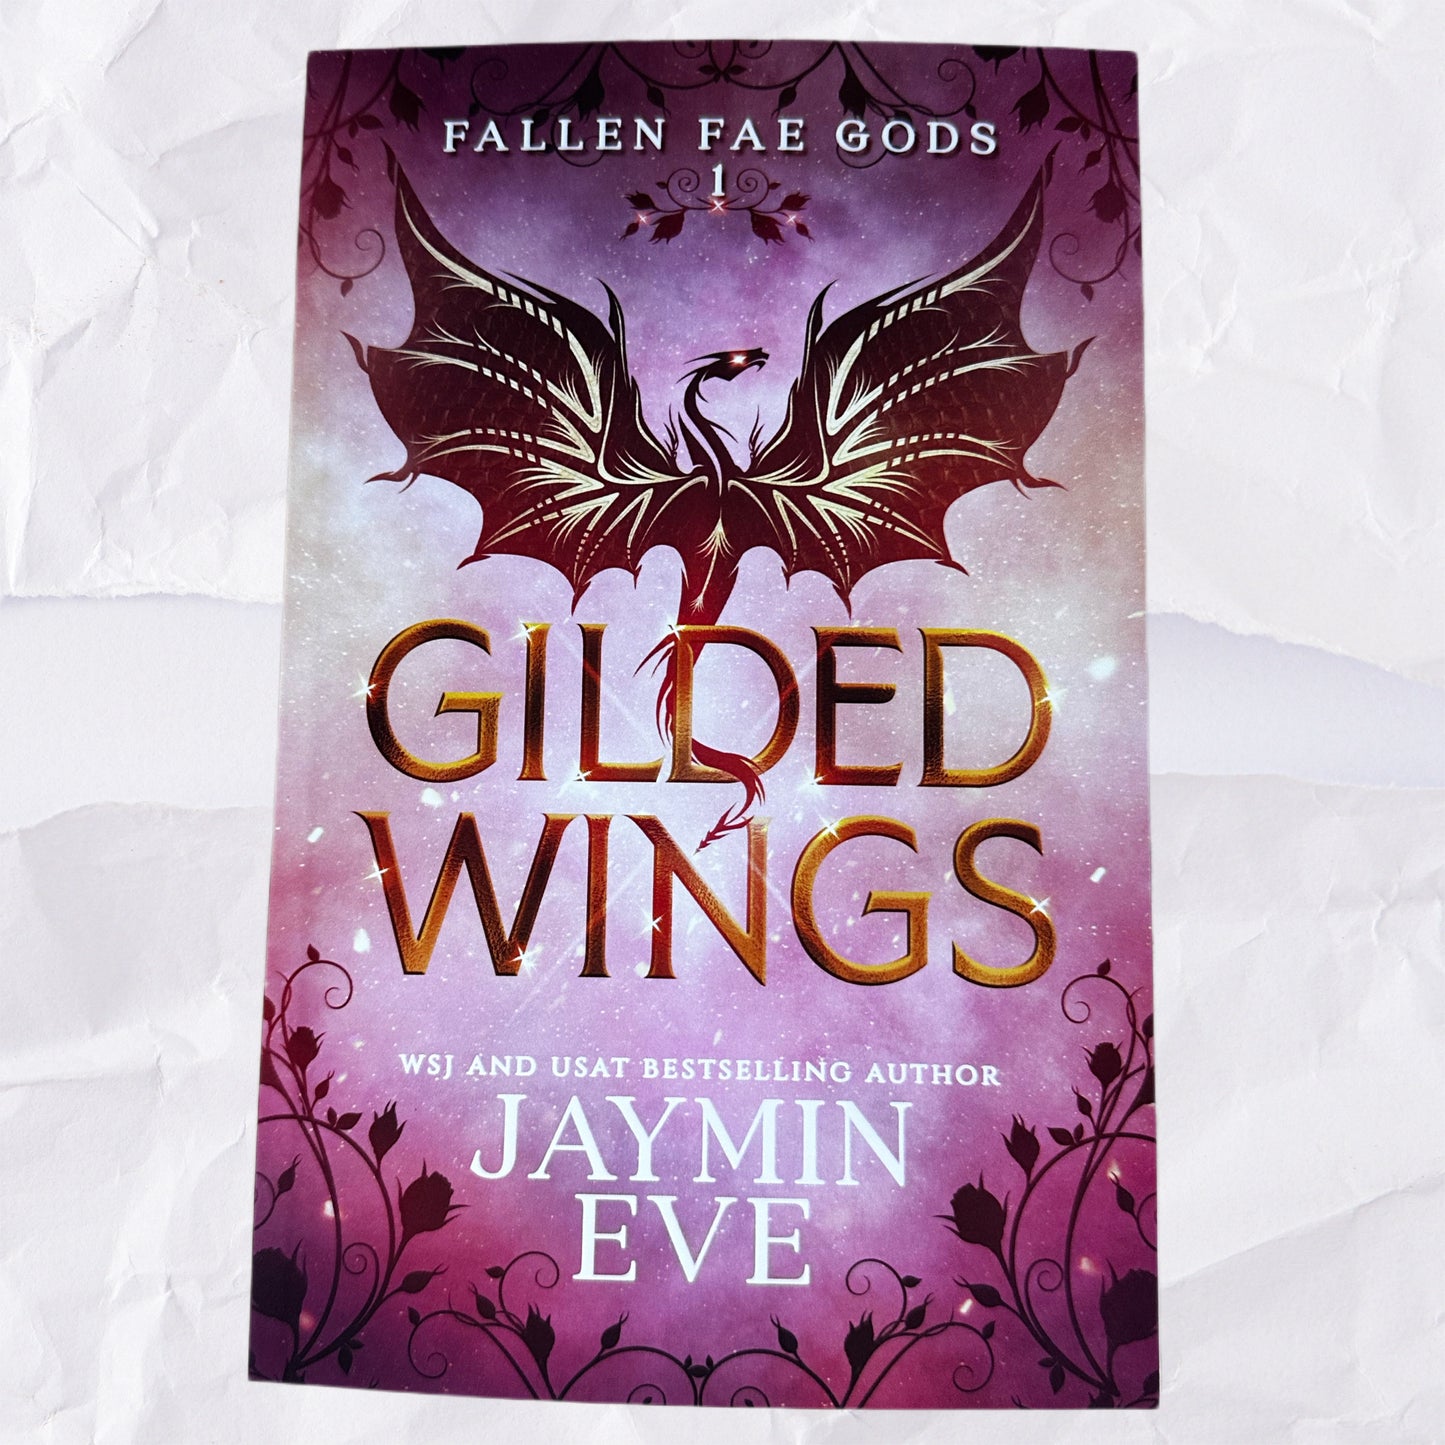 Gilded Wings (Fallen Fae Gods #1) by Jaymin Eve